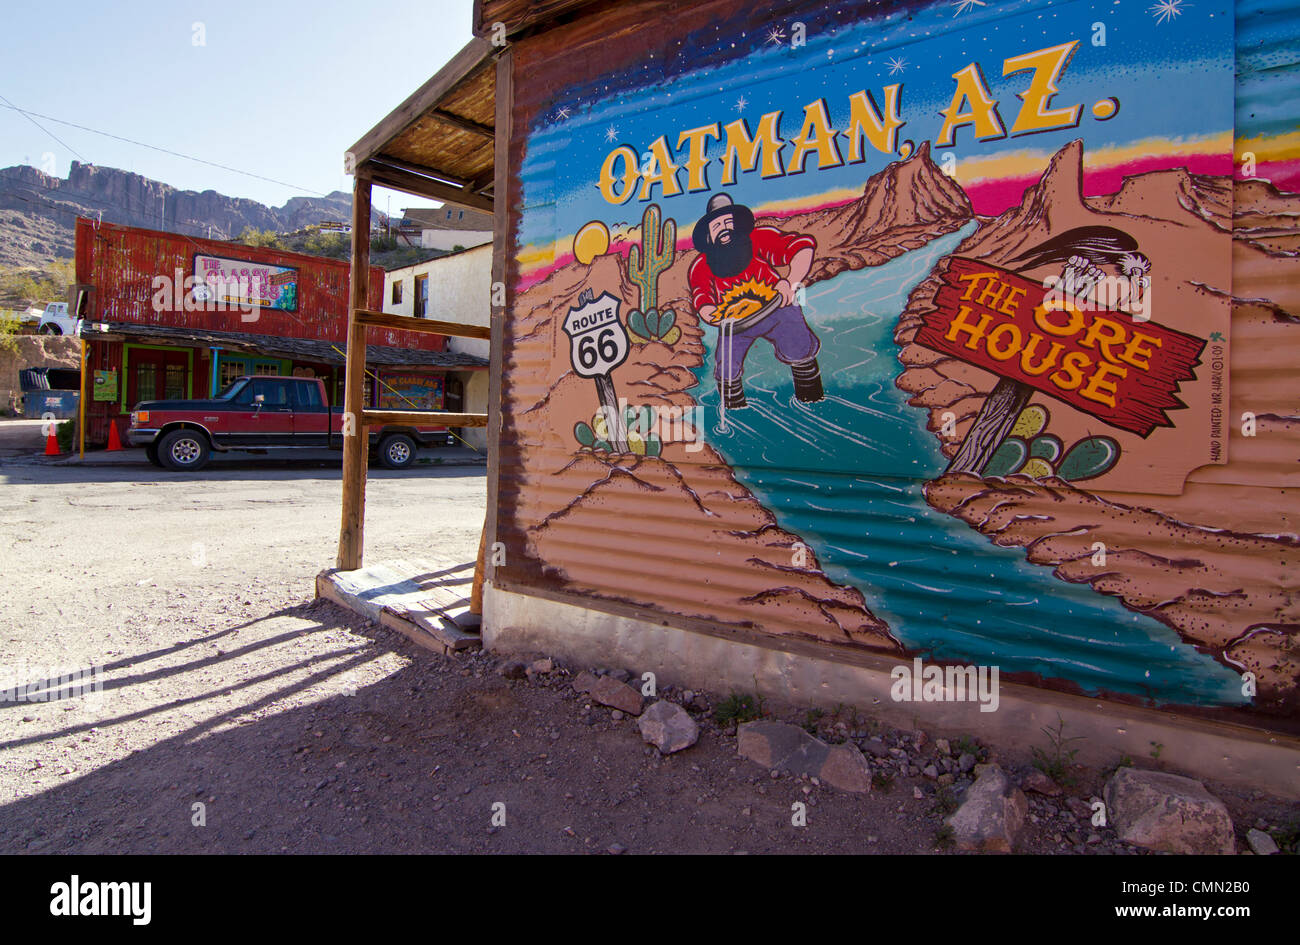 Oatman, Arizona, une ancienne ville minière dans l'Ouest américain situé le long de la route historique 66, maintenant une destination touristique. Banque D'Images